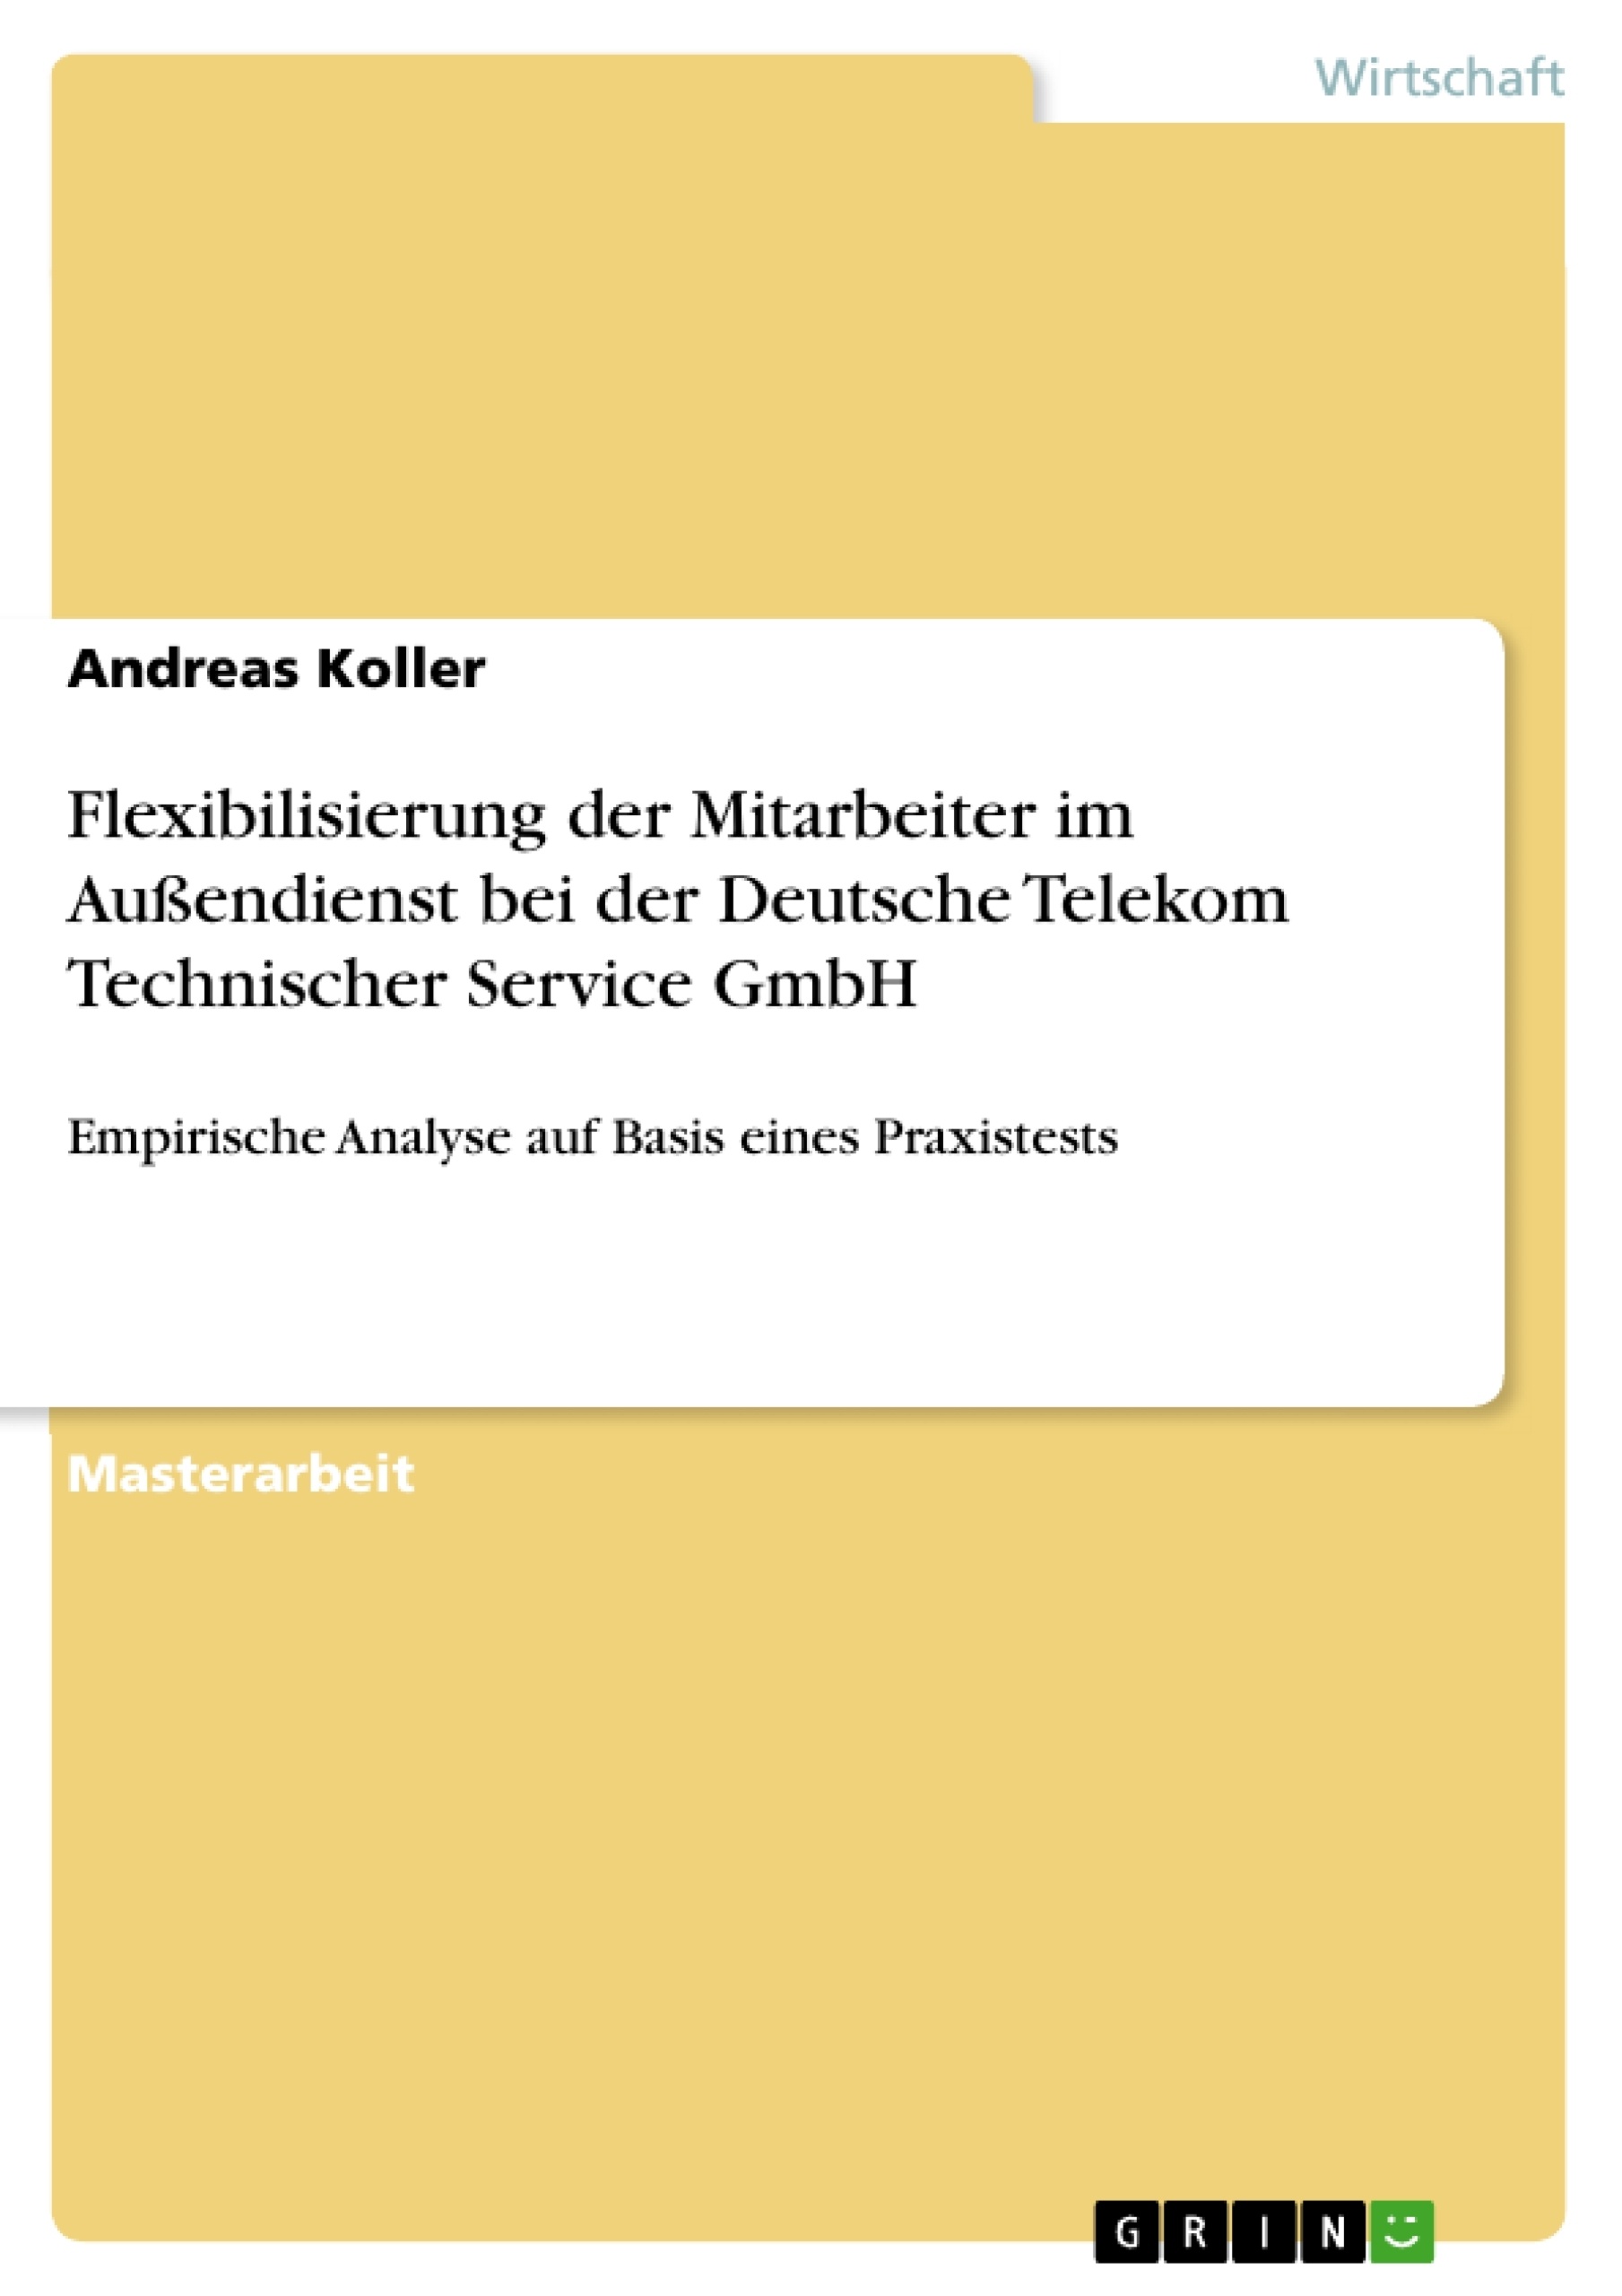 Título: Flexibilisierung der Mitarbeiter im Außendienst bei der Deutsche Telekom Technischer Service GmbH